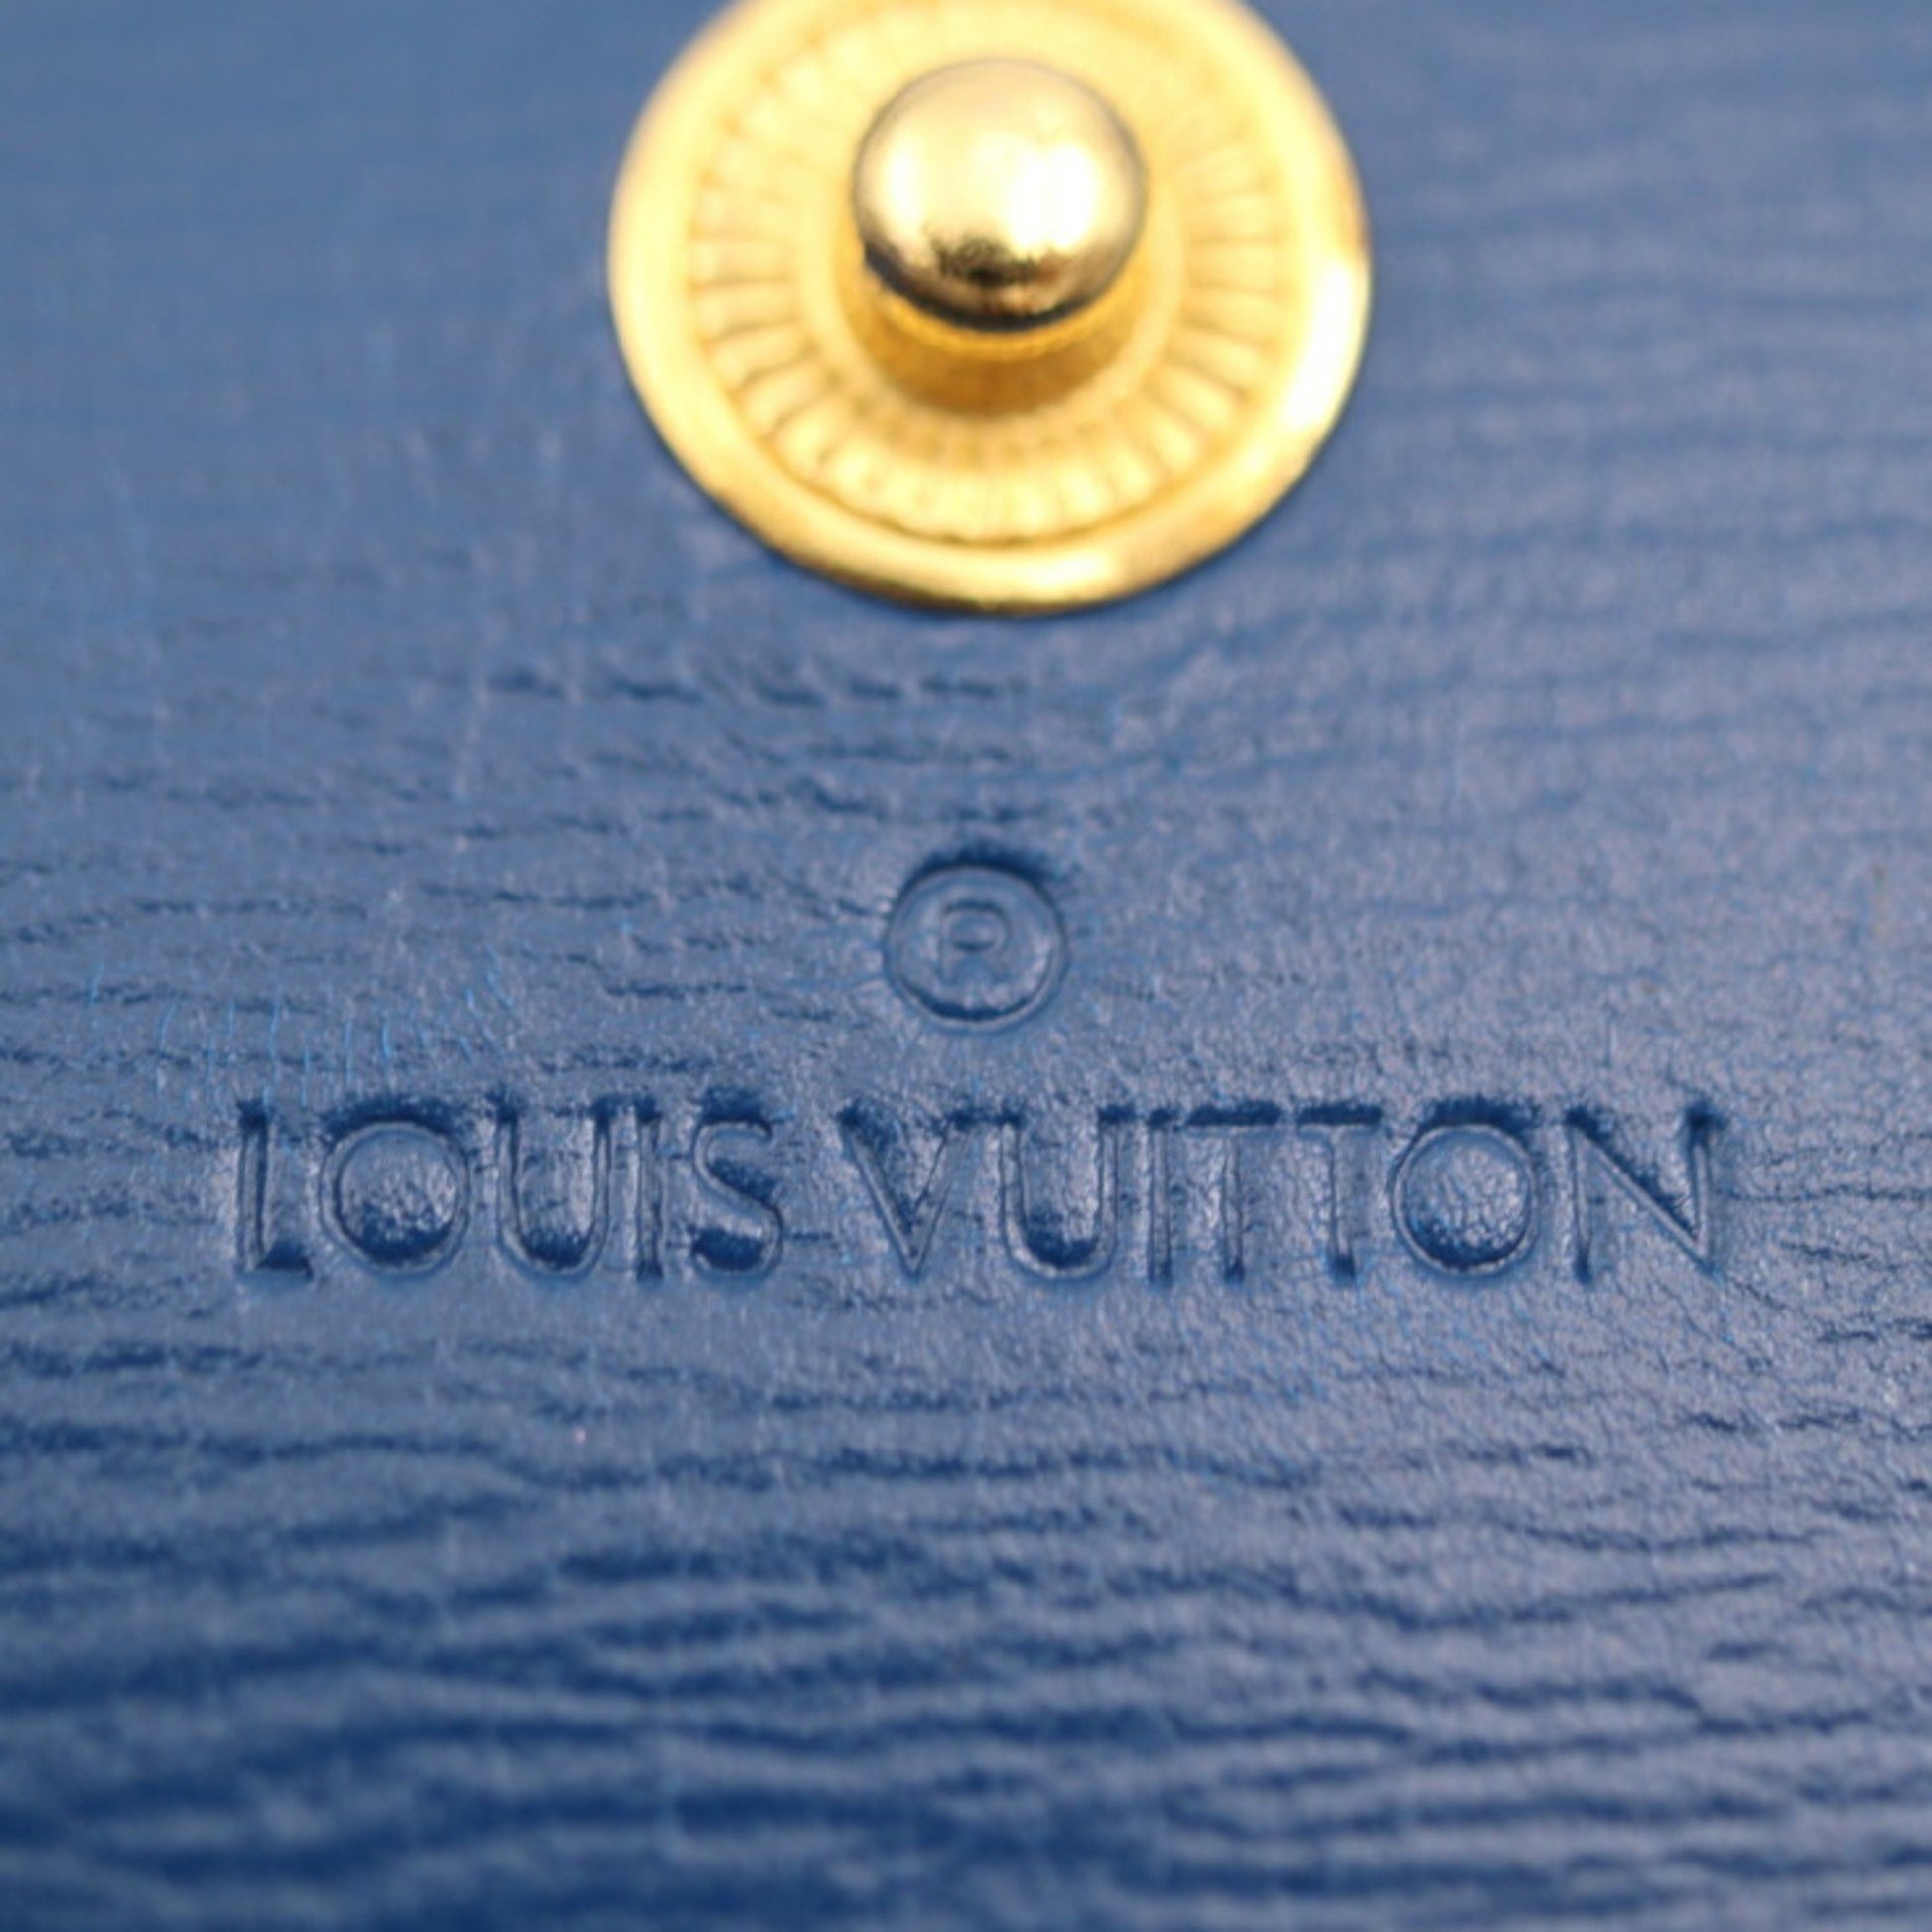 Louis-Vuitton-Epi-Portefeuille-Cult-Credit-Monet-Green-M63544